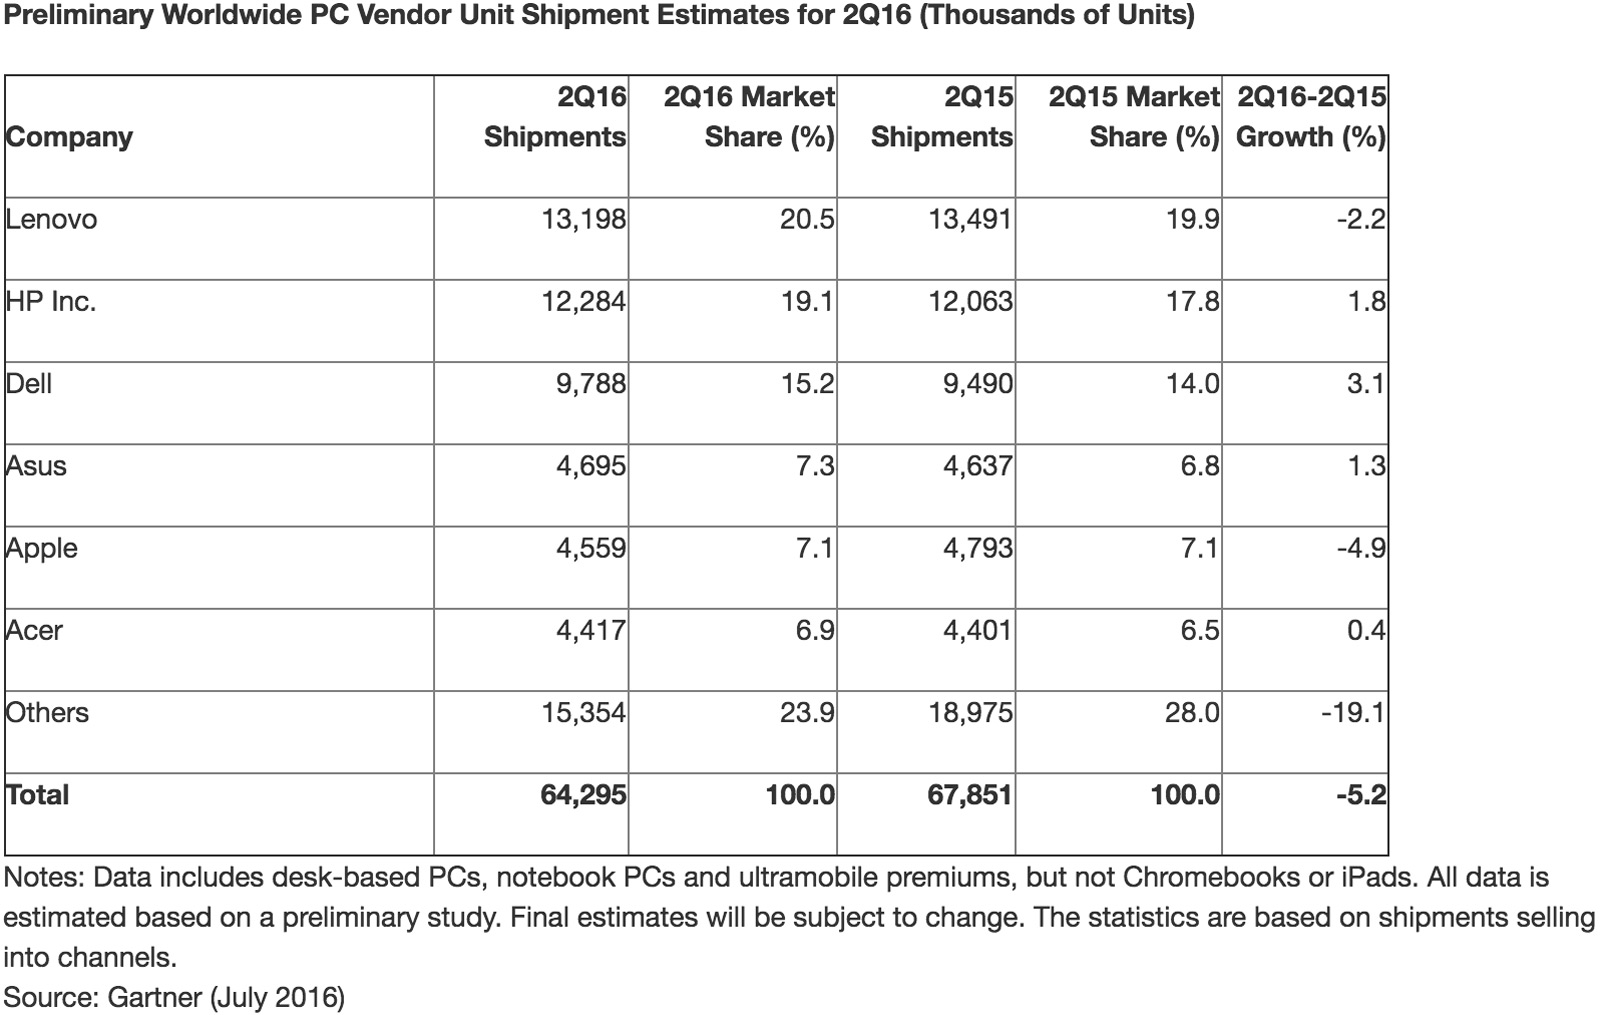 Gartner's worldwide PC market share estimate for Q2 2016